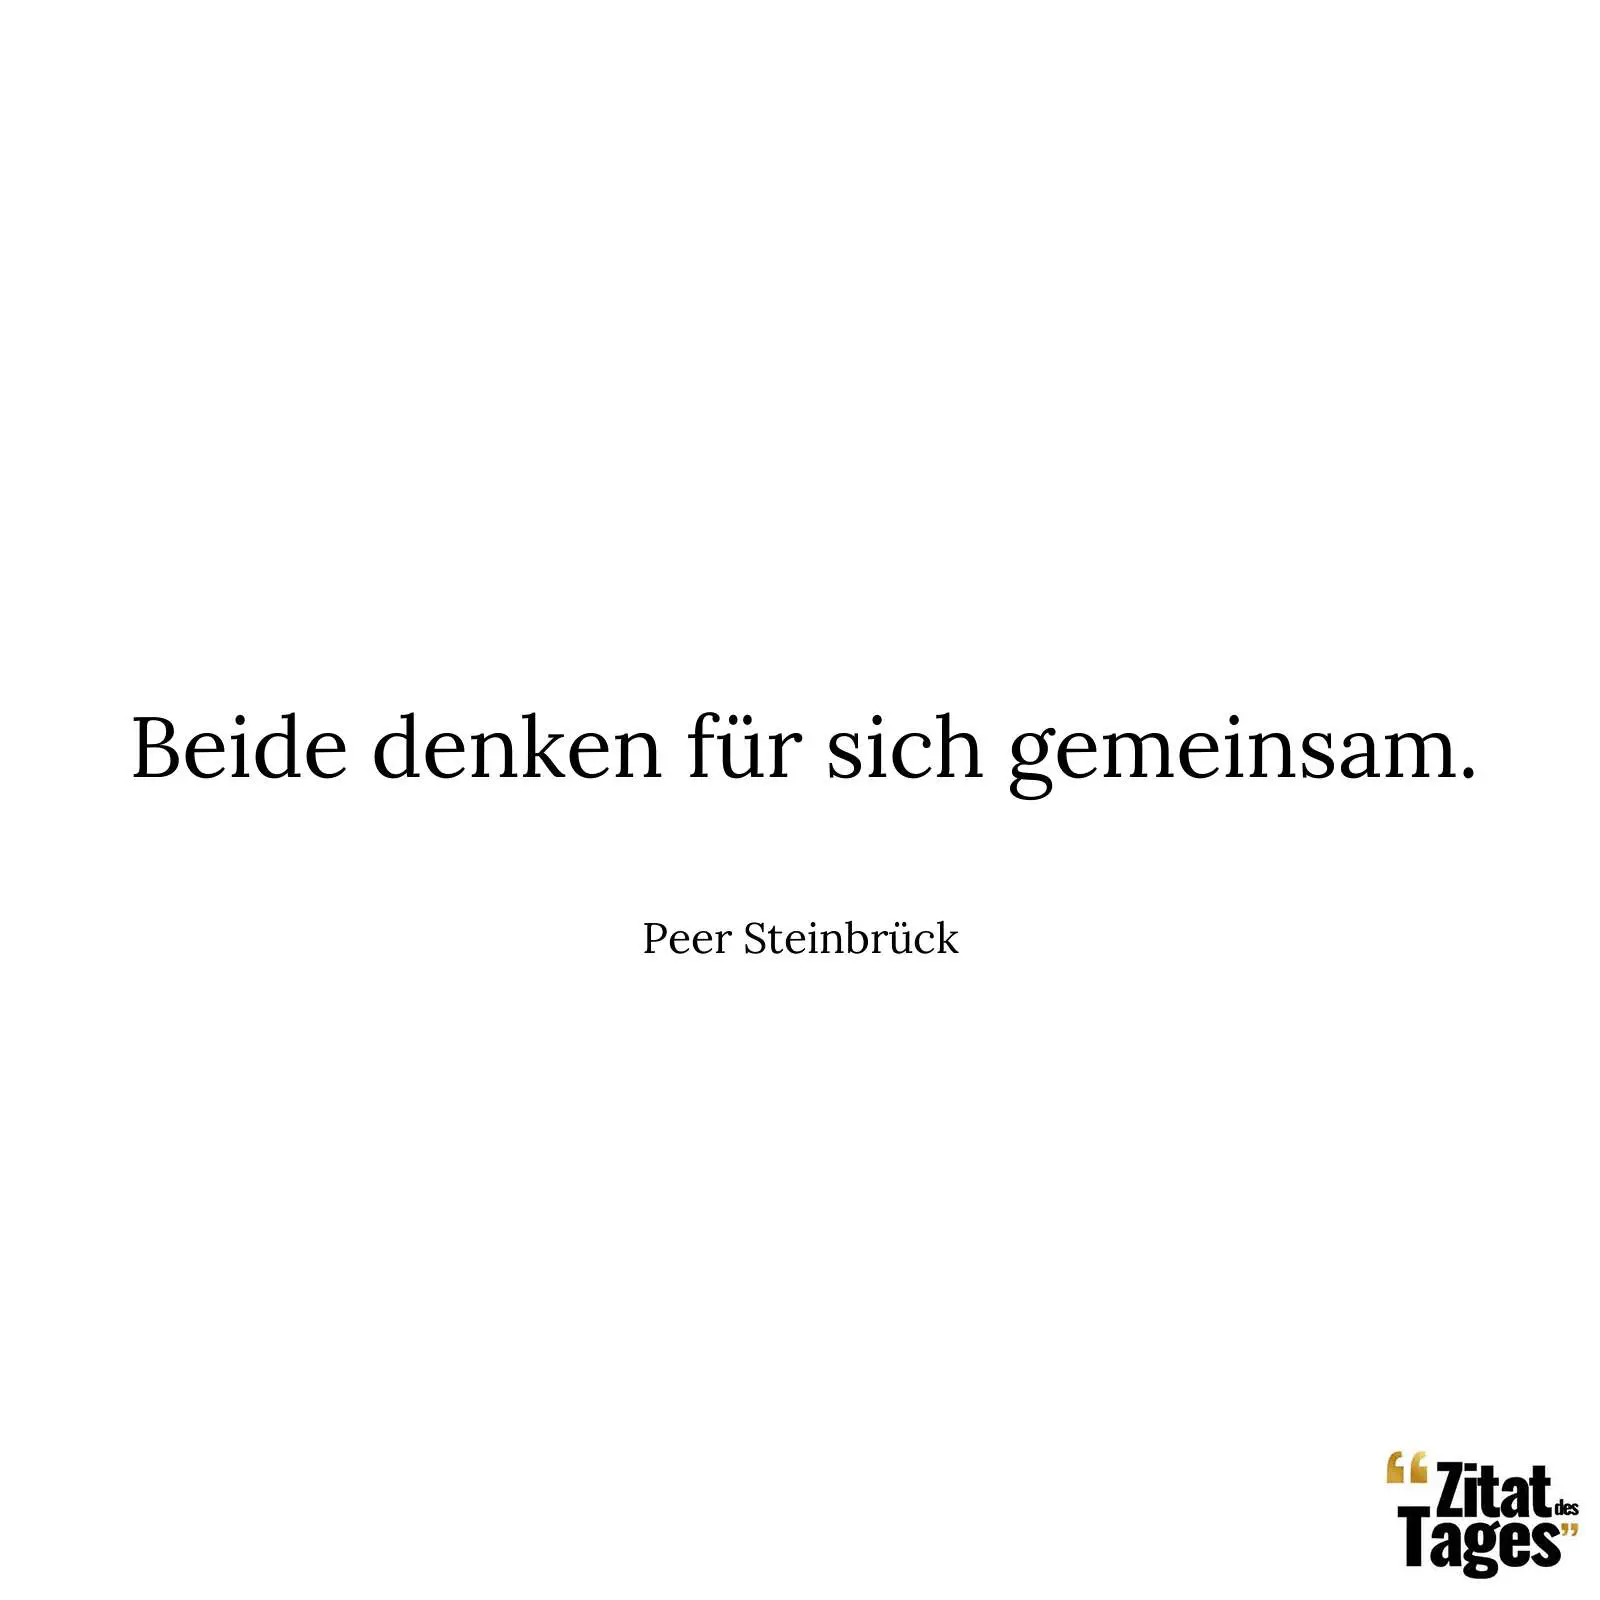 Beide denken für sich gemeinsam. - Peer Steinbrück